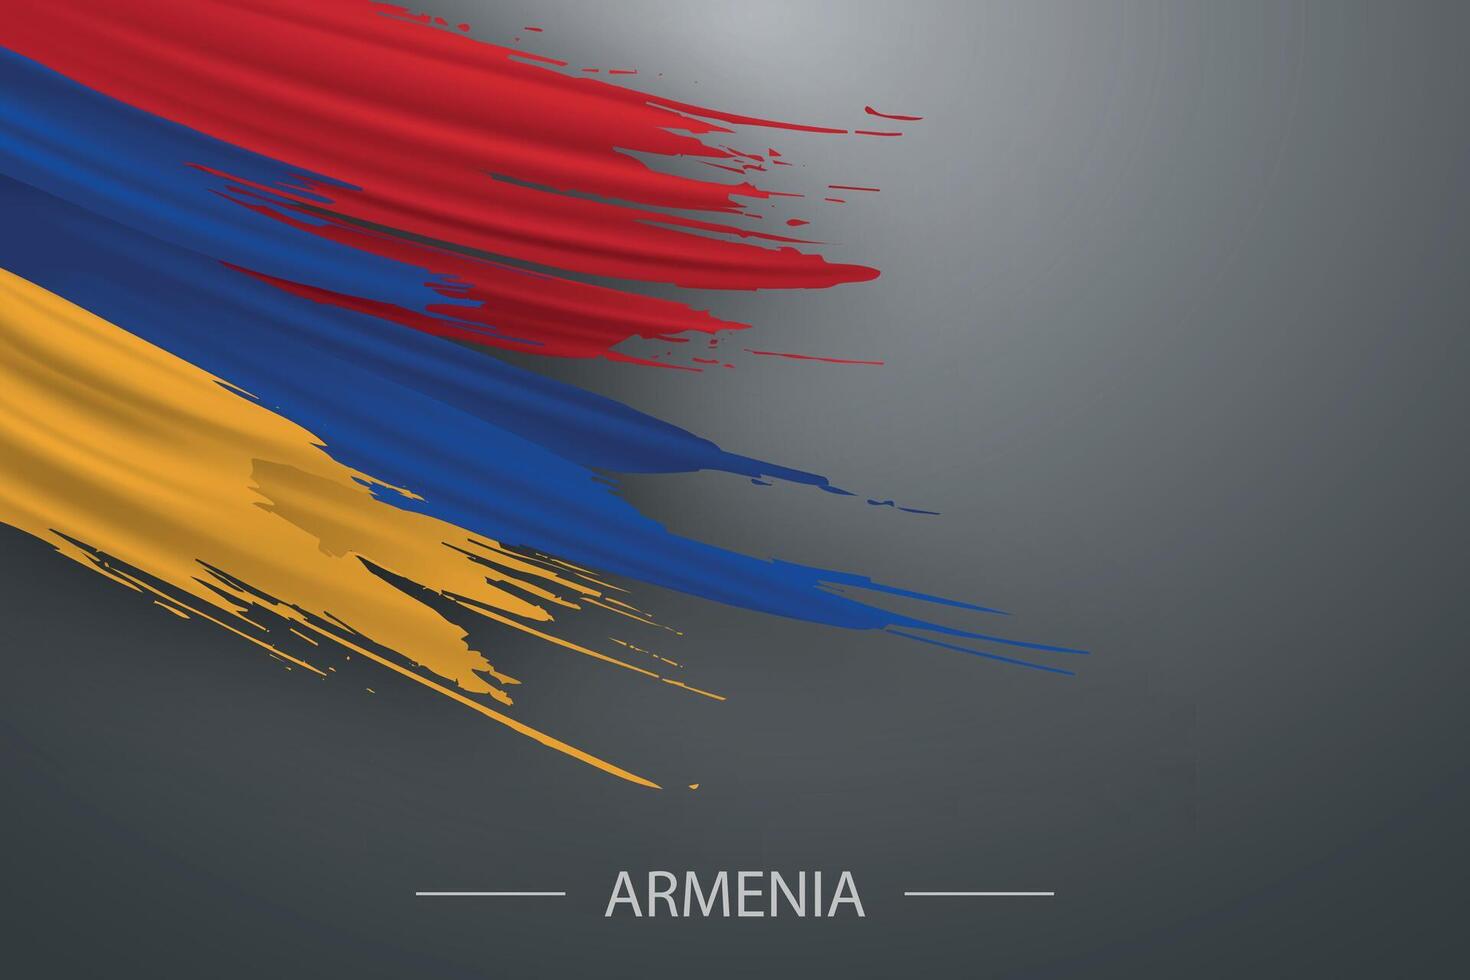 3d grunge brush stroke flag of Armenia vector